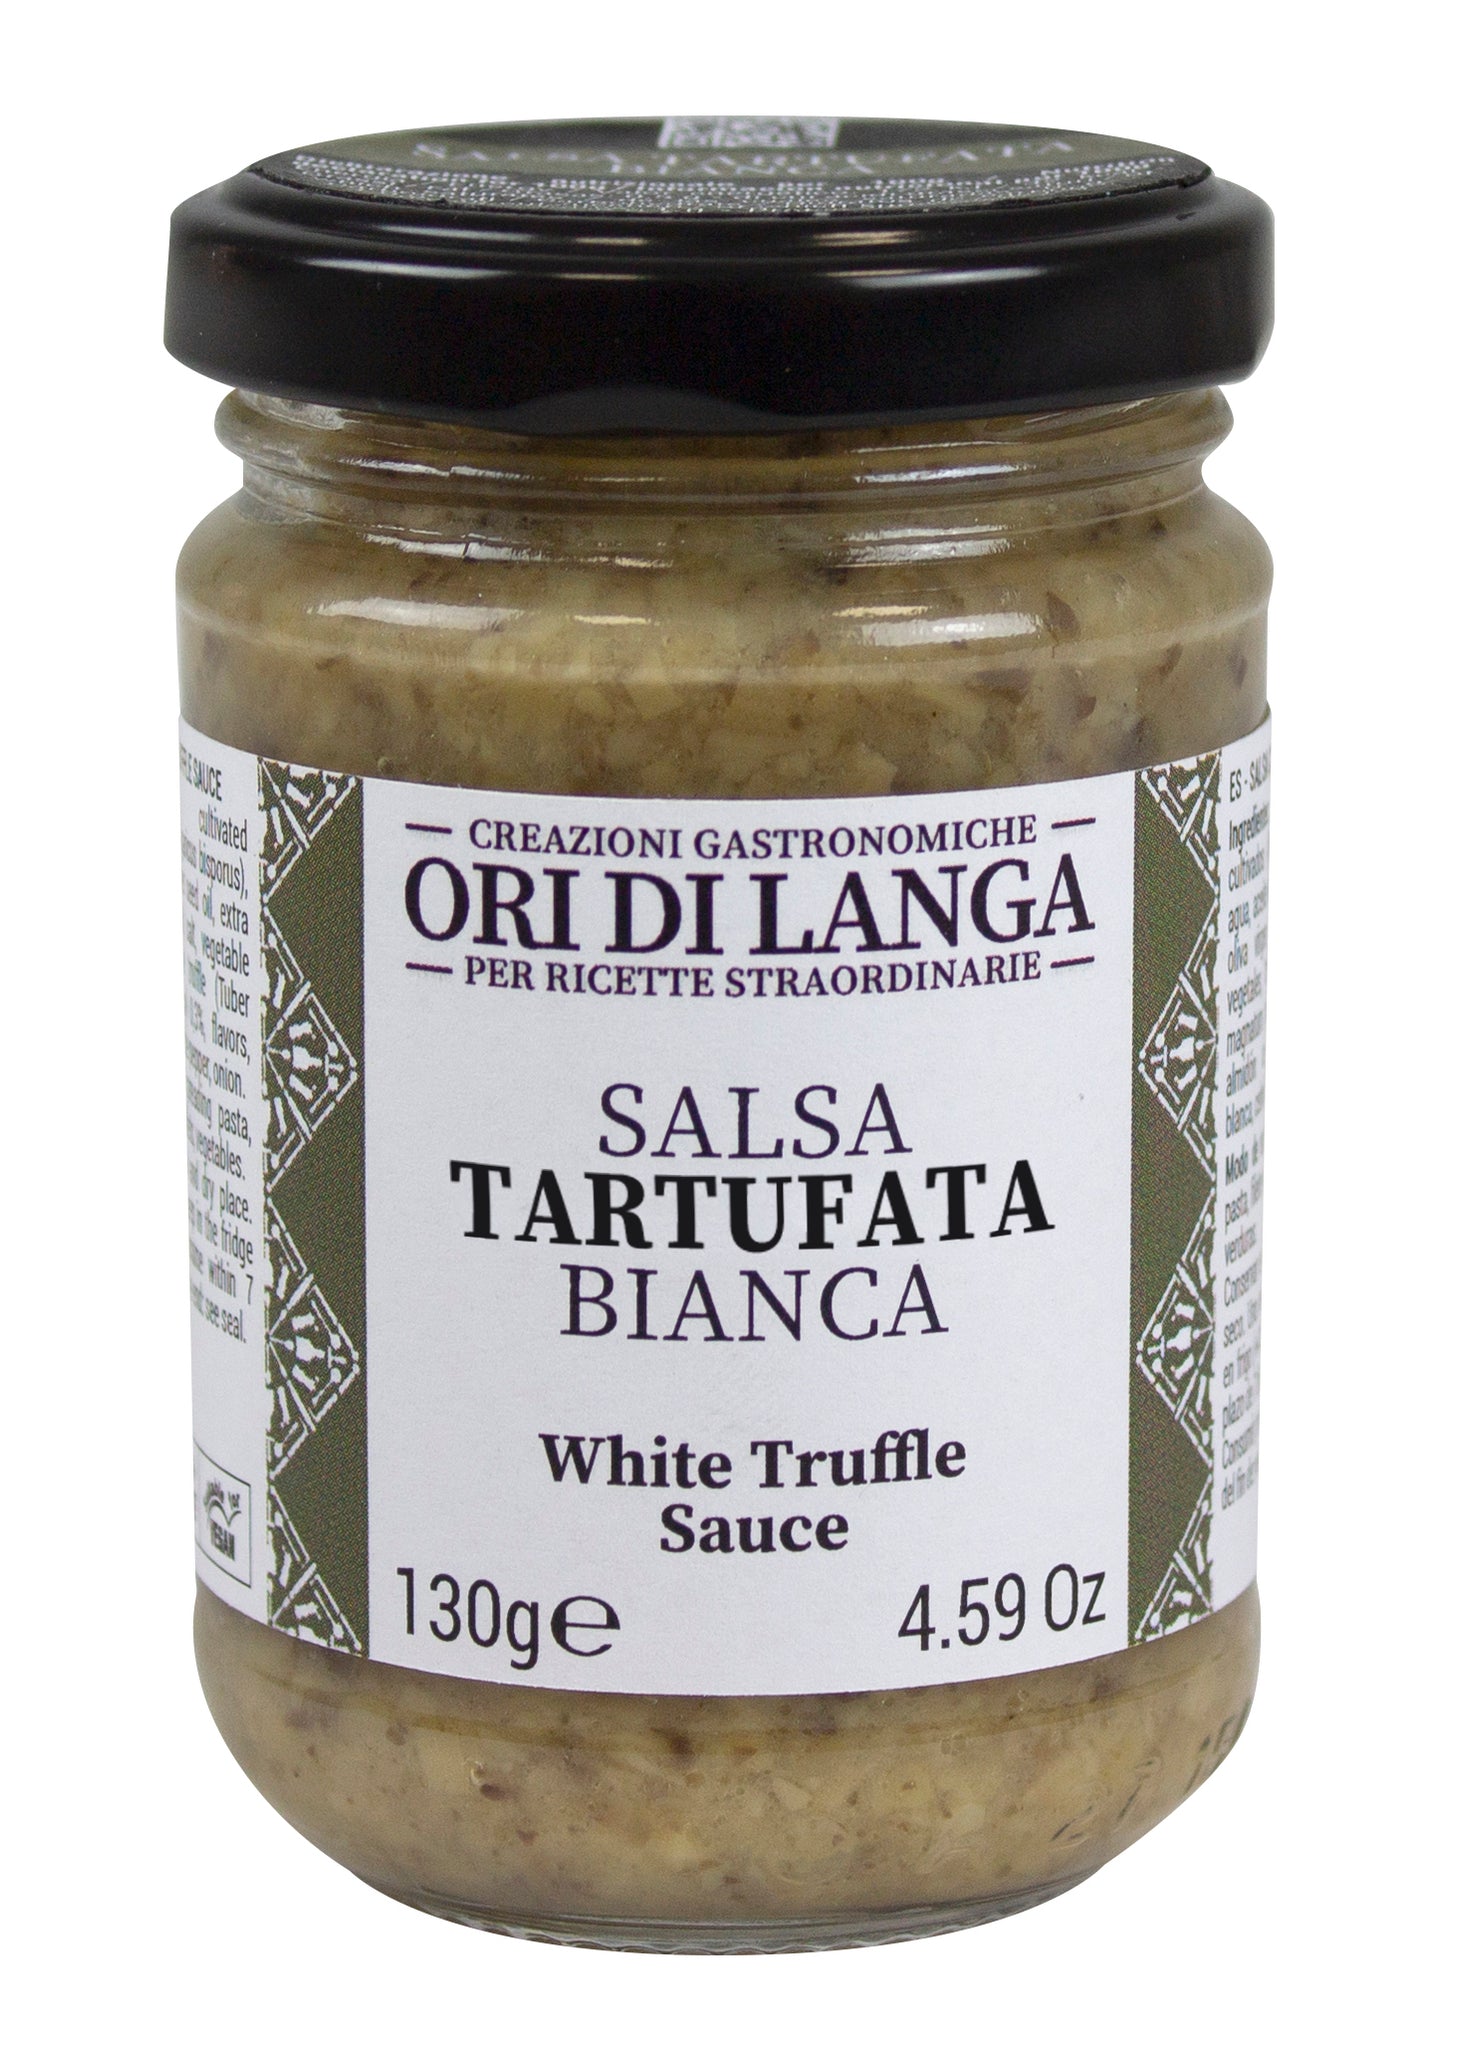 White truffle sauce 130g